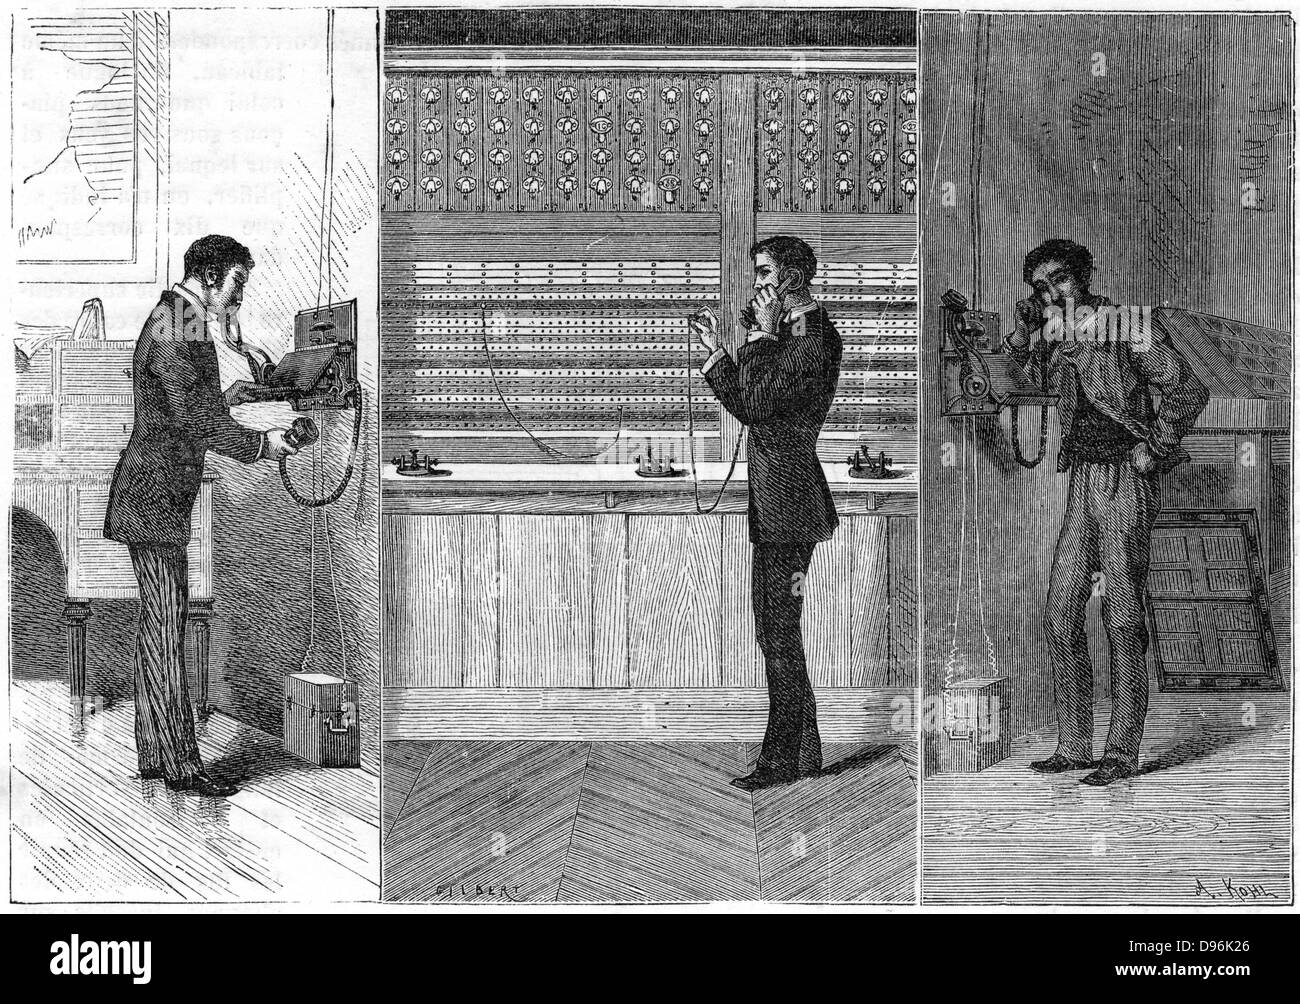 Telefon: Mann auf linken Seite macht die Durchläufe durch den Bediener an der Börse, Zentrum, an Empfänger auf der rechten Seite aufrufen. Ader-System. Gravur veröffentlicht Paris 1881. Stockfoto